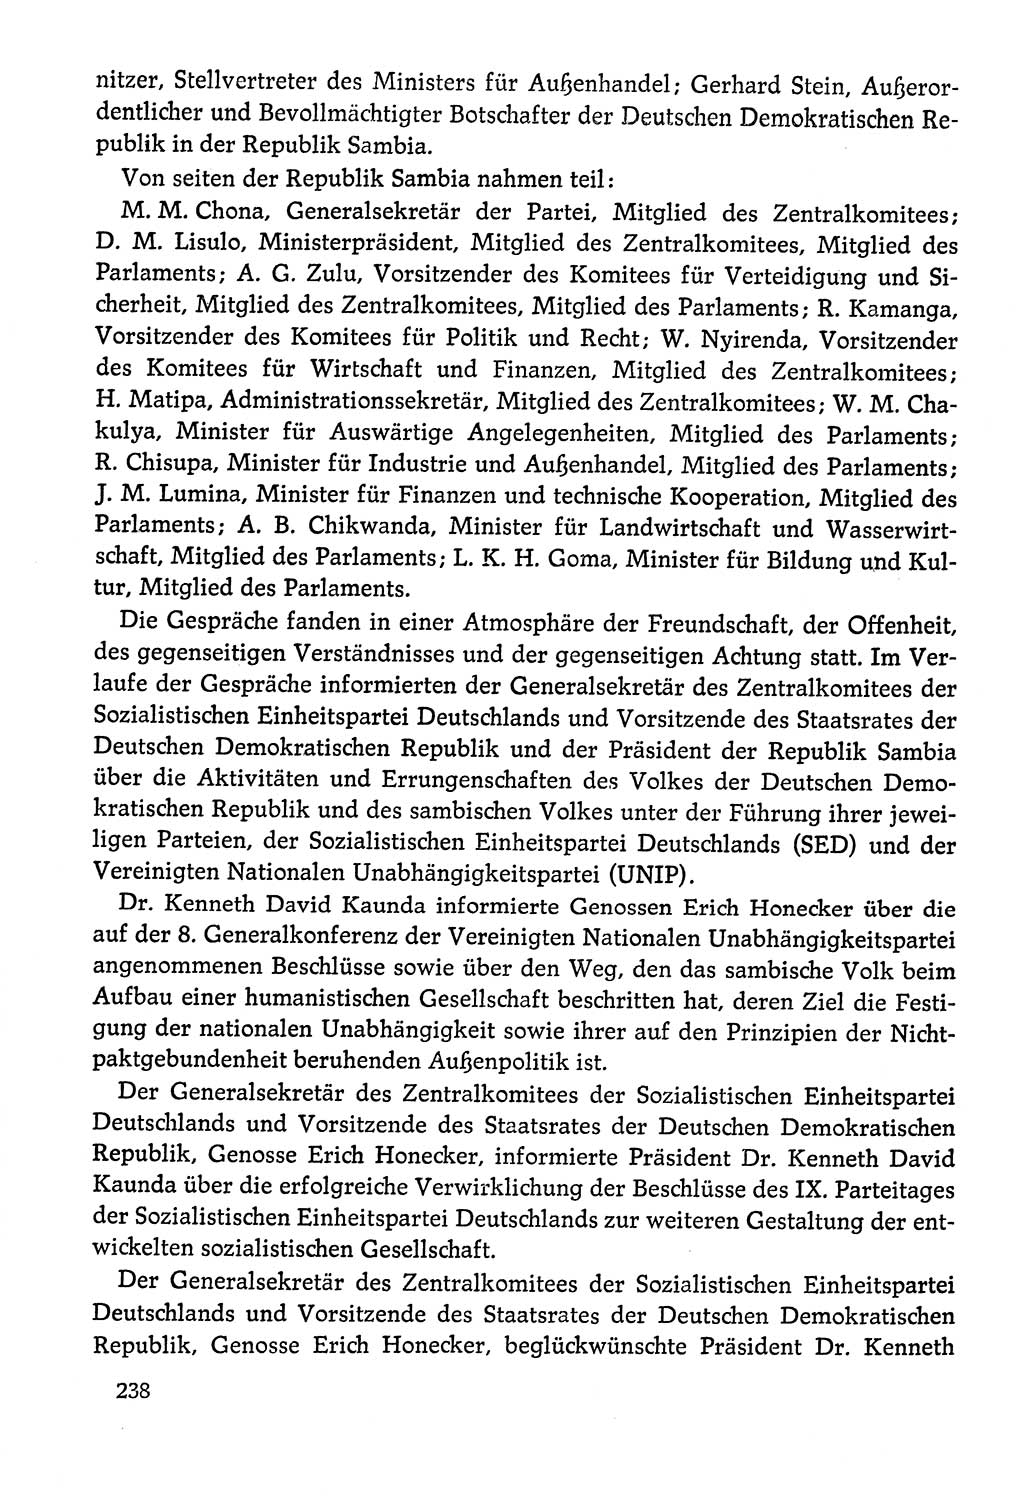 Dokumente der Sozialistischen Einheitspartei Deutschlands (SED) [Deutsche Demokratische Republik (DDR)] 1978-1979, Seite 238 (Dok. SED DDR 1978-1979, S. 238)